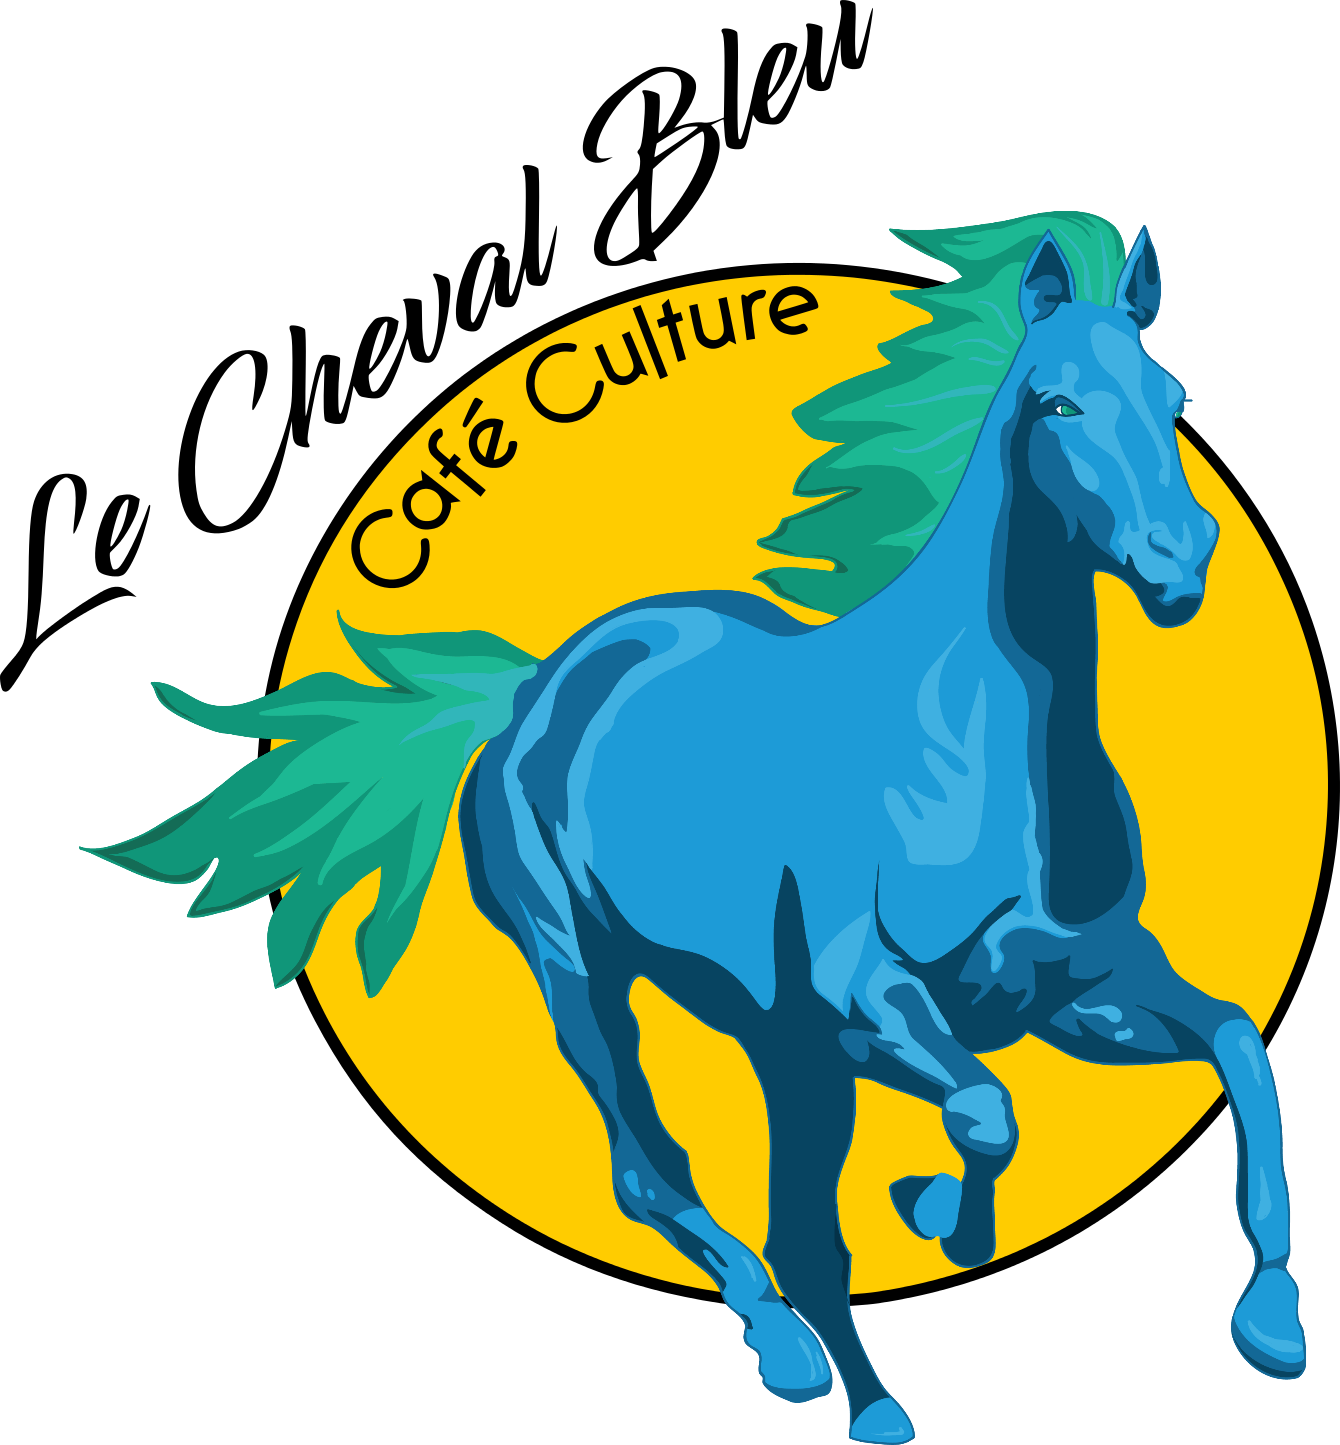 Café Culture Le Cheval Bleu - Horse (1340x1445)